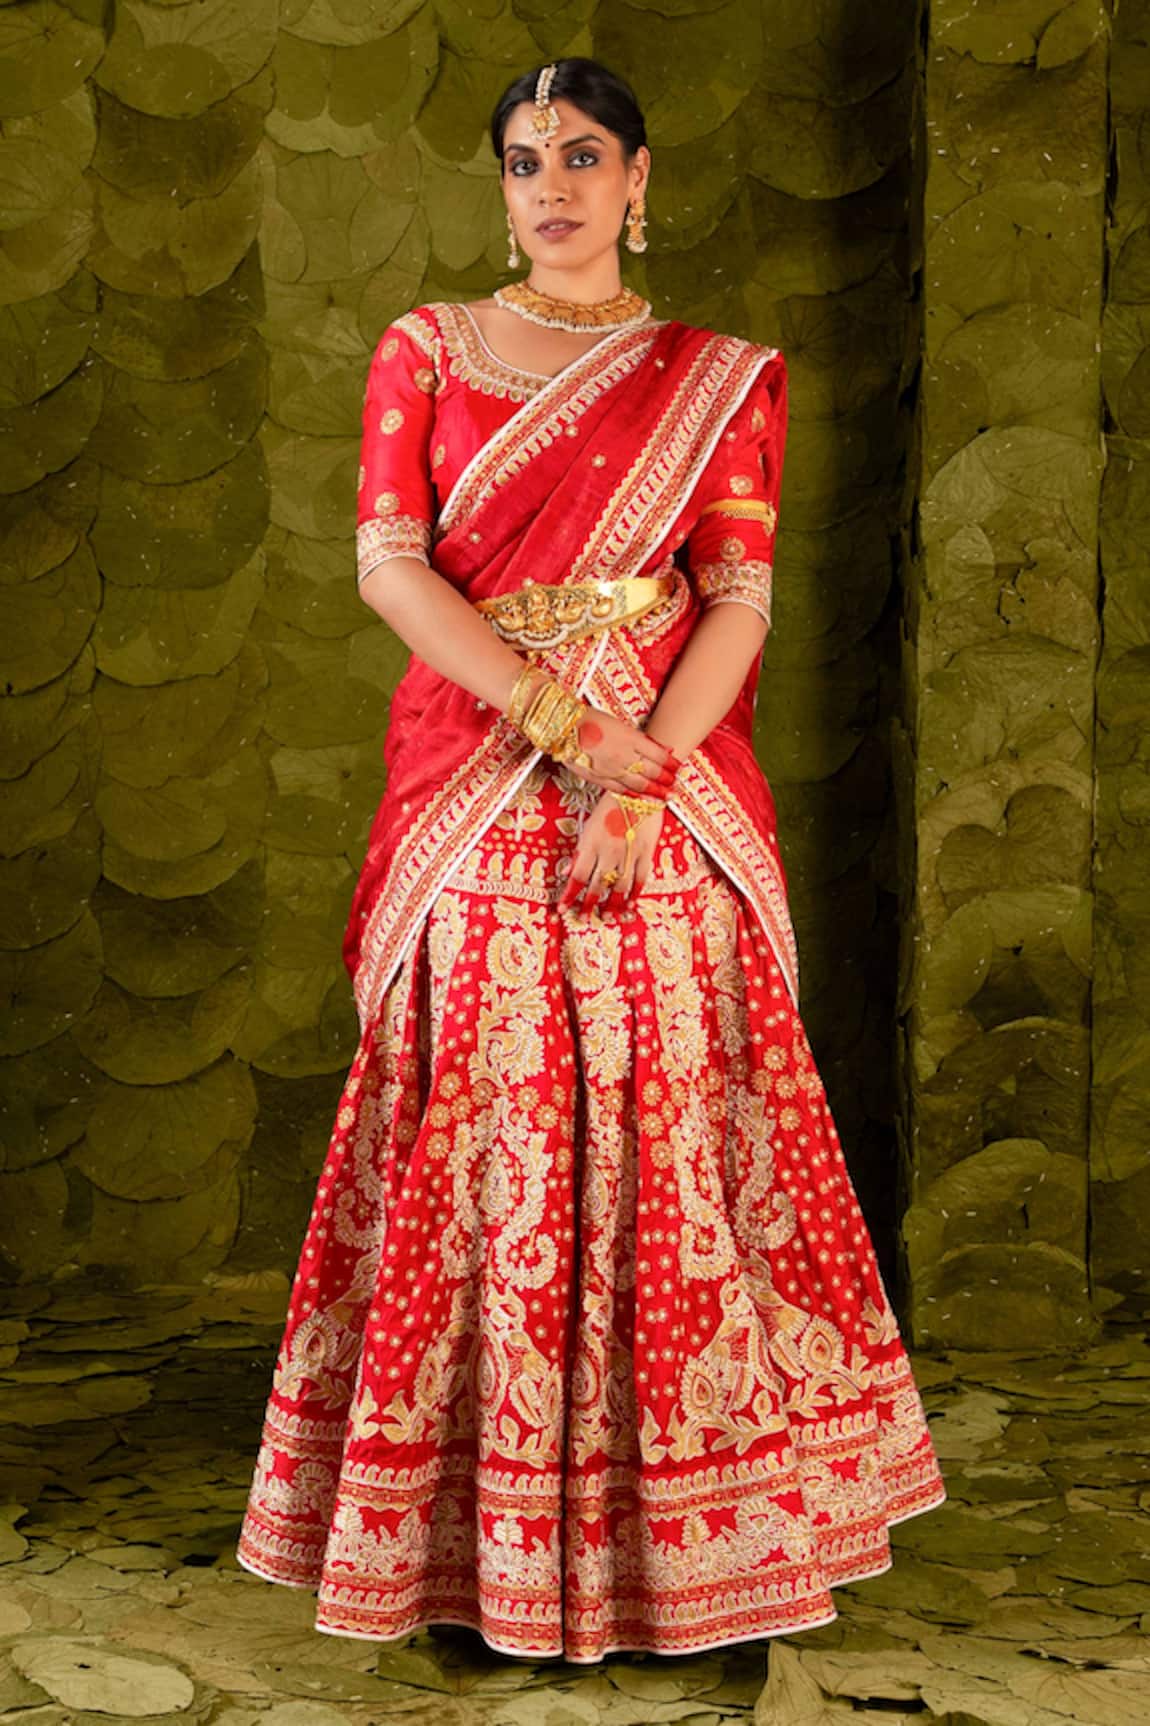 Latha Puttanna Hennu Embellished Bridal Lehenga Set